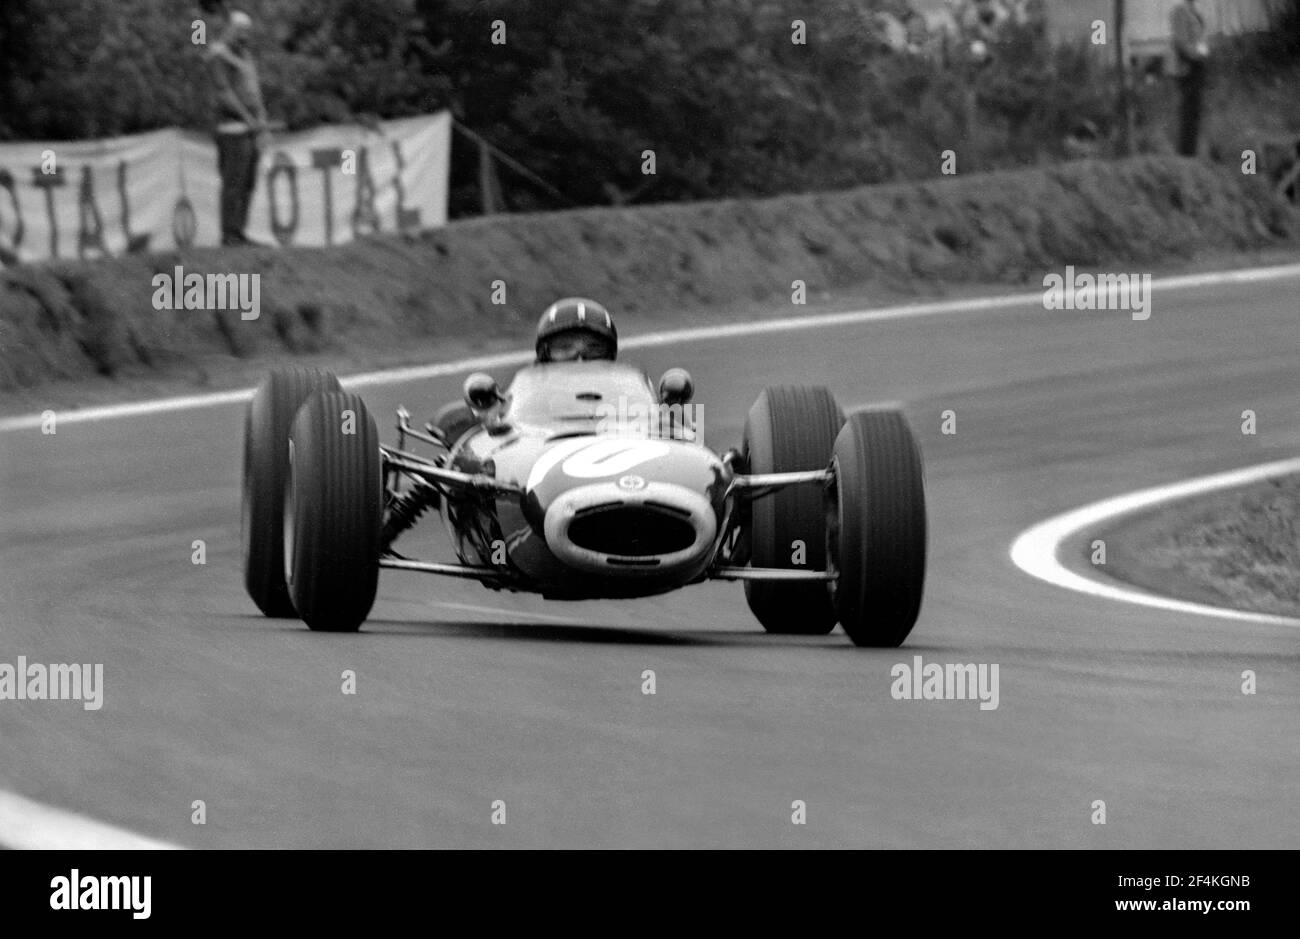 Graham HILL guida BRM F1 a piena velocità durante il Gran Premio di Francia 1965, nel circuito di Charade vicino a Clermont-Ferrand. Foto Stock